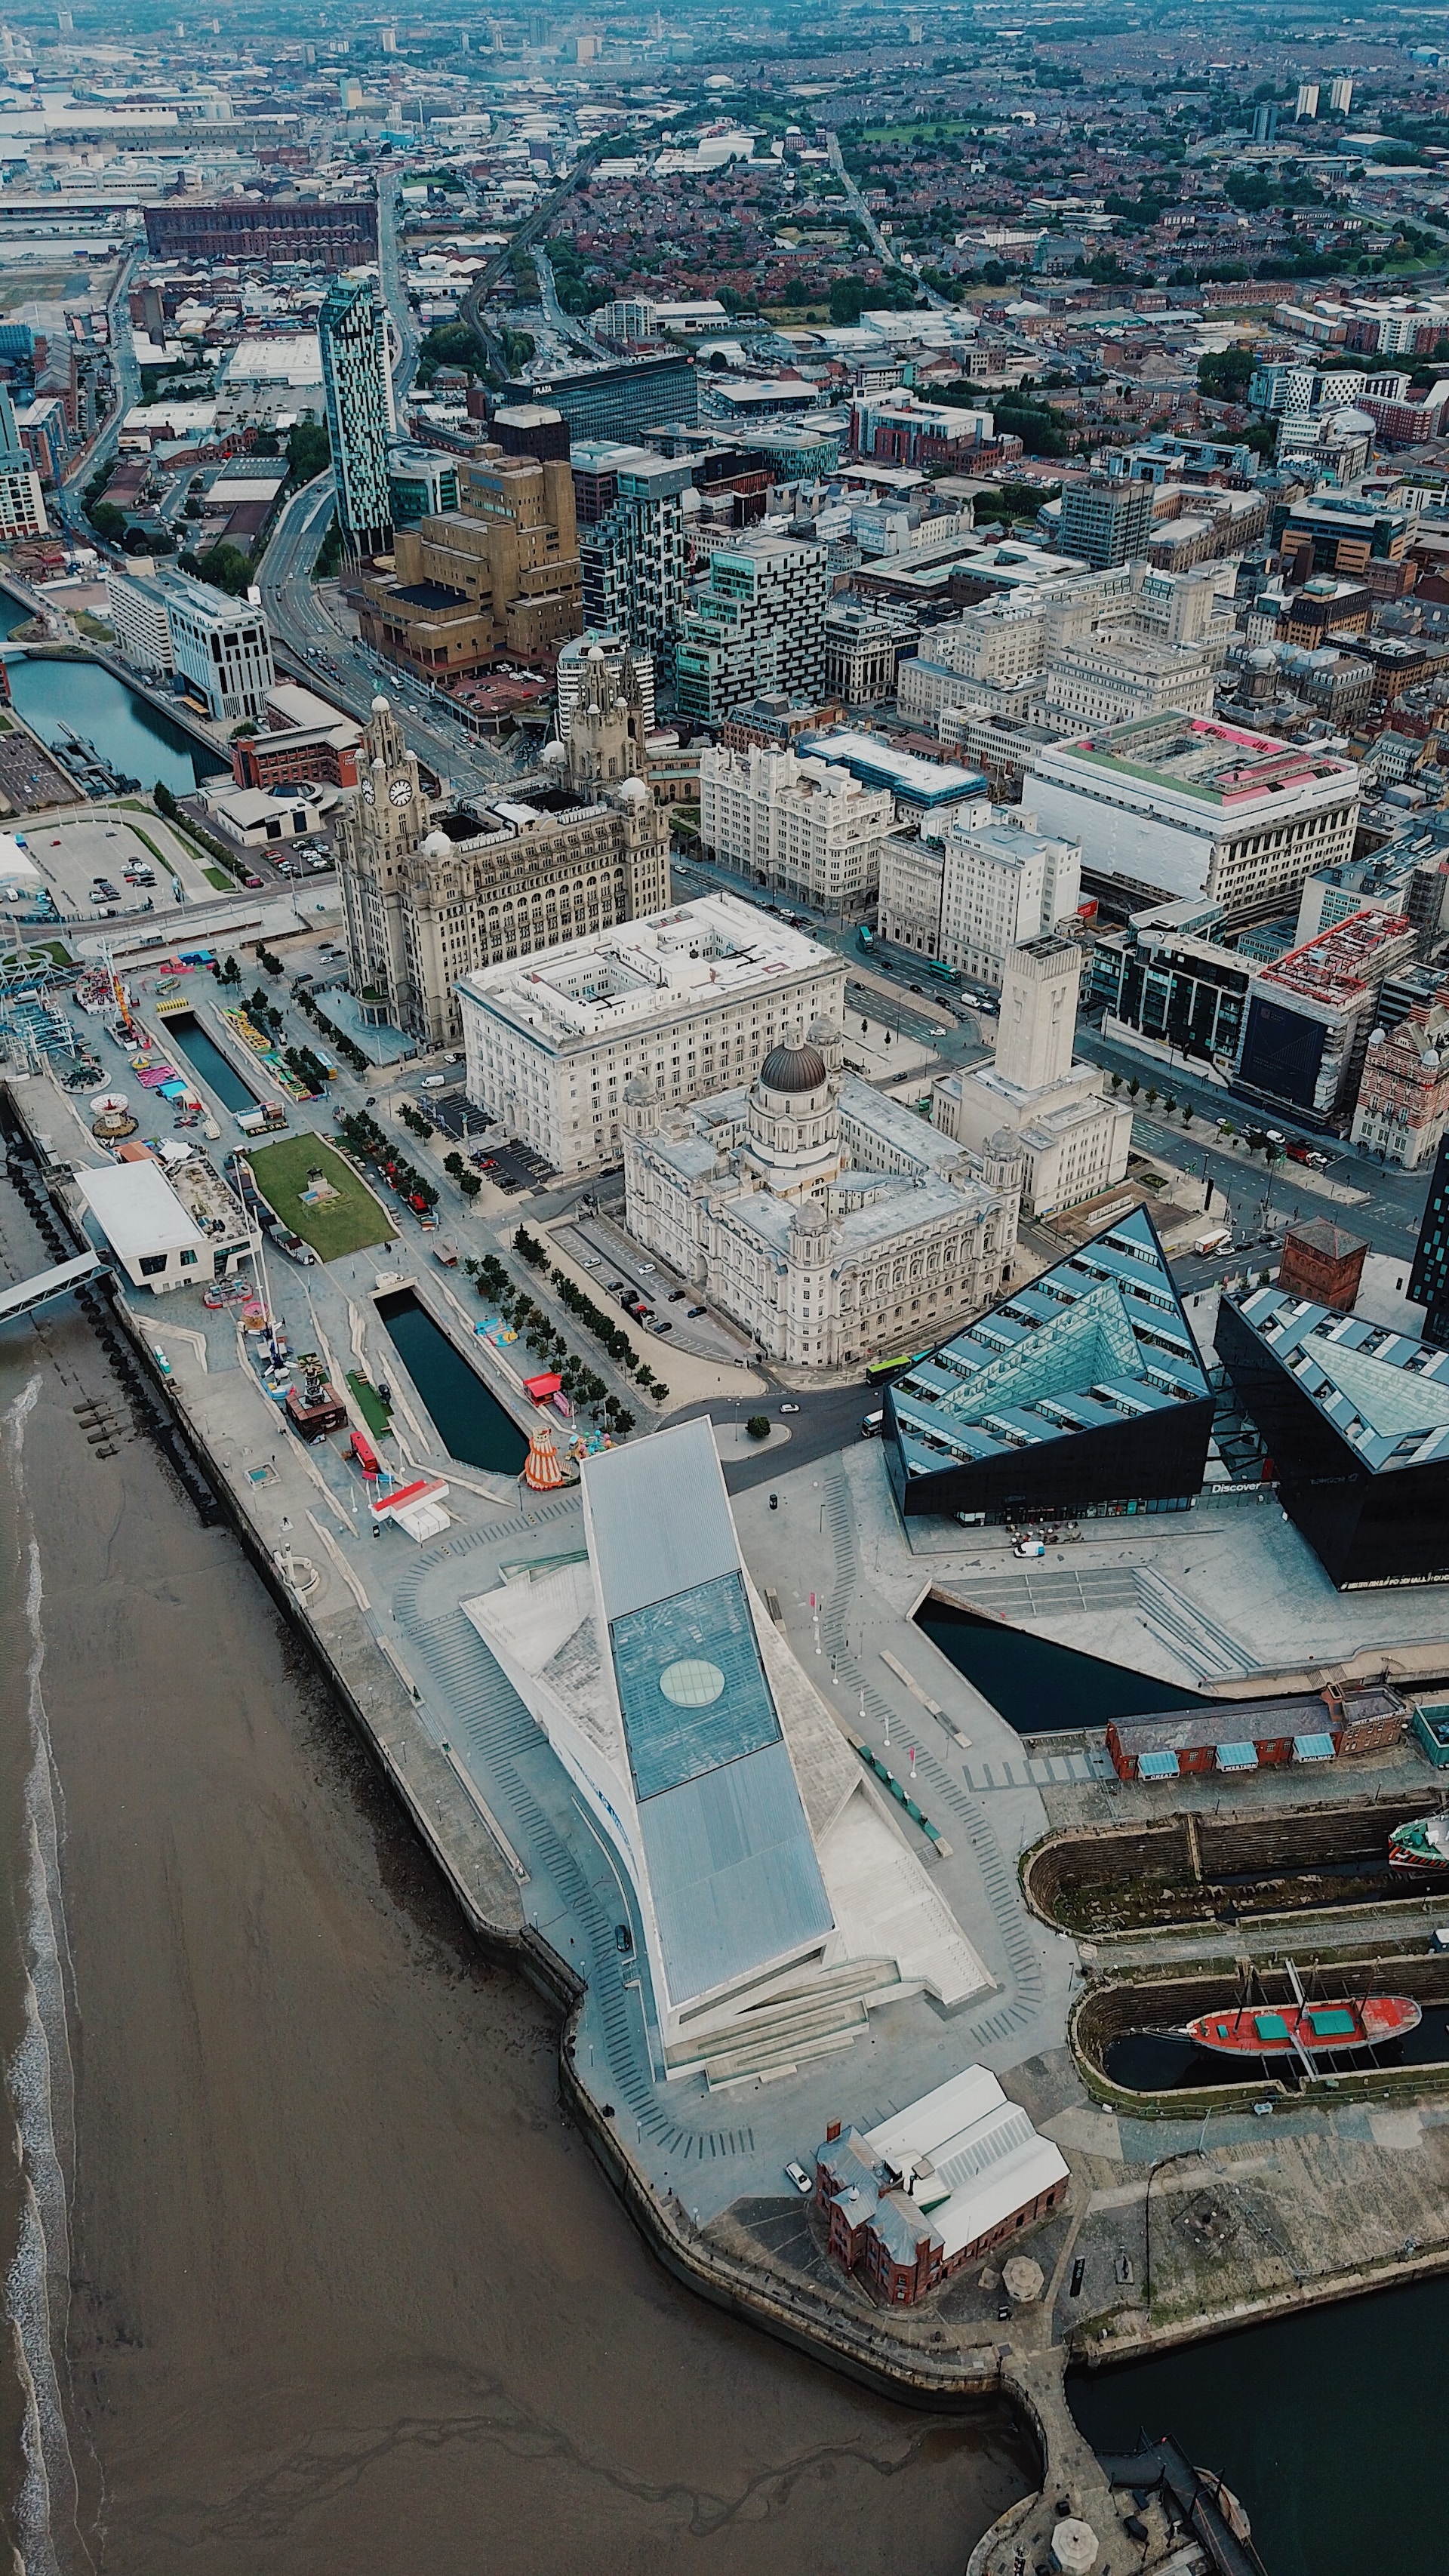 영국의 리버풀은 도시재생을 통해 리버풀 워터프론트 재개발 프로젝트를 추진하여 도시의 경제적 활성화를 이루었습니다.